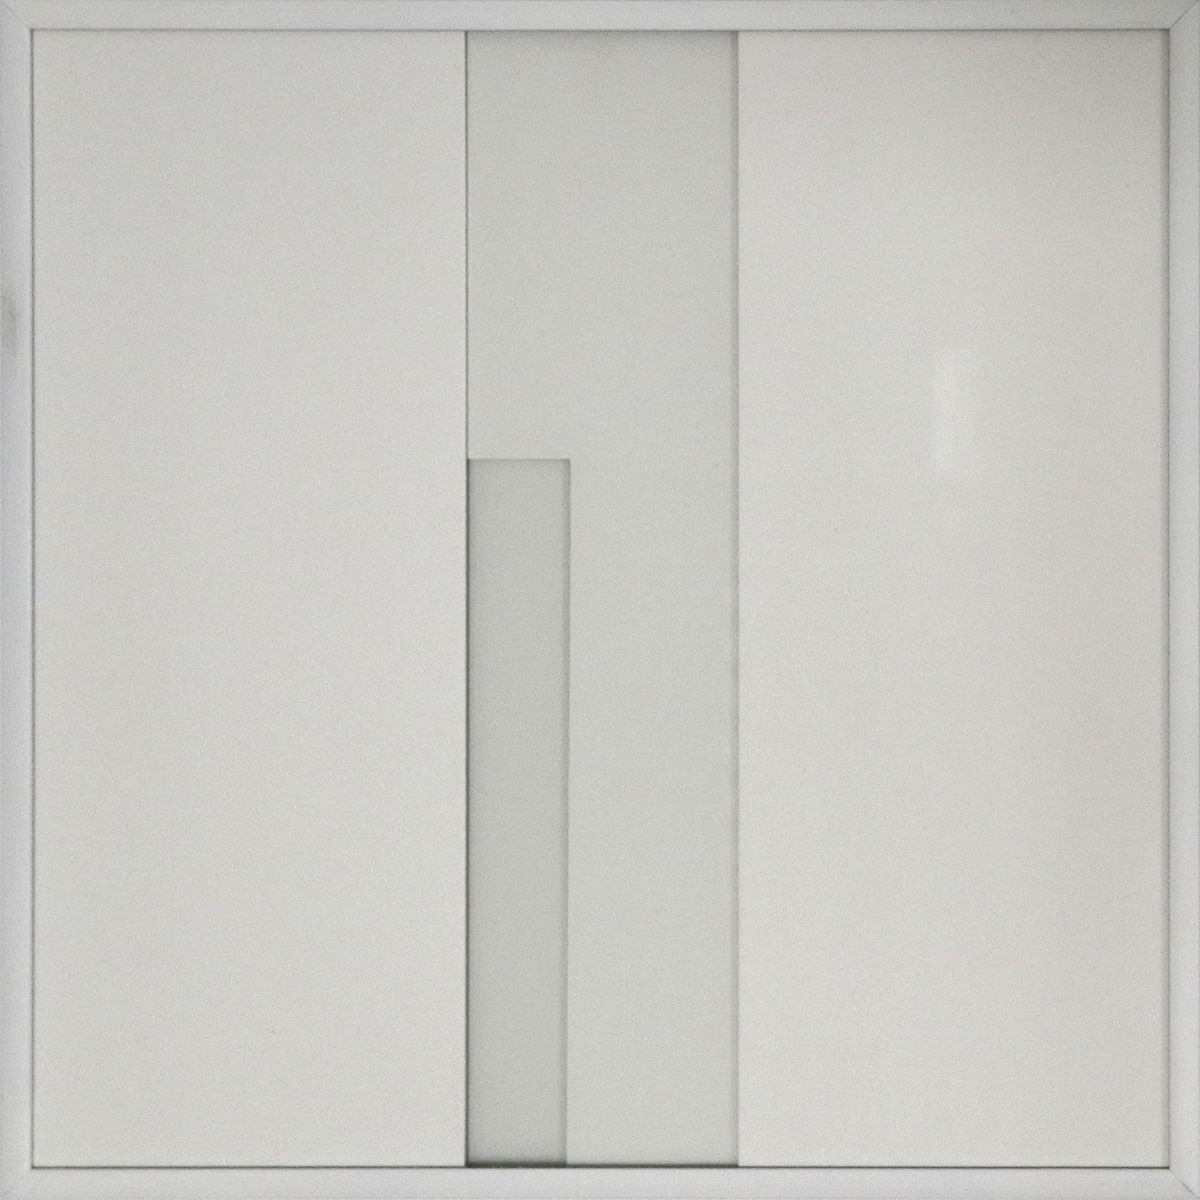 verdichtete Transparenz 15, 202230 x 30 x 4 cmcardboard and glass, framedEdition: 3